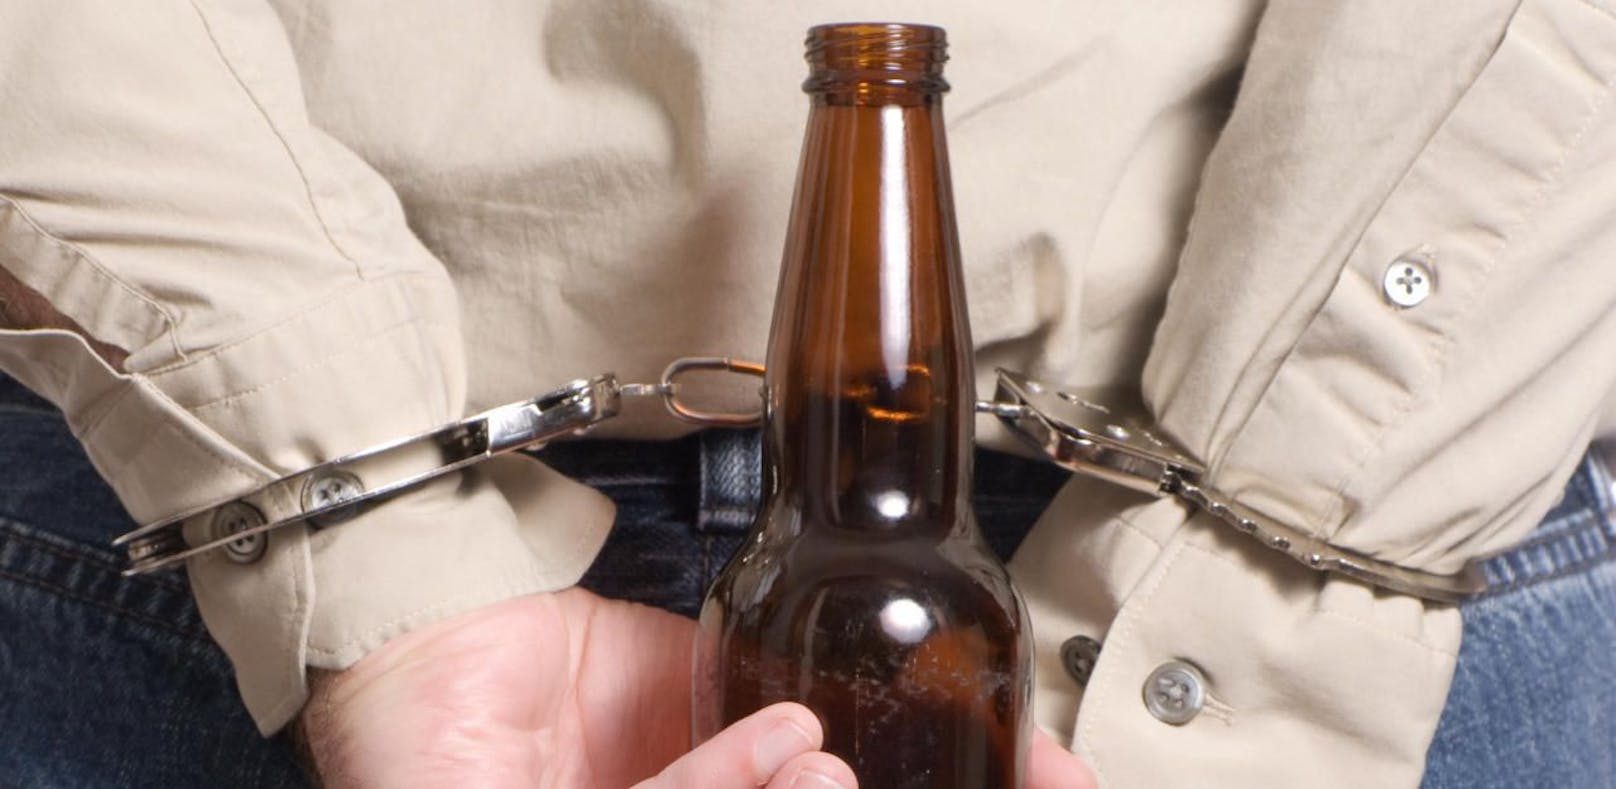 Bier für 1,03 Euro bringt Flüchtigen ins Gefängnis